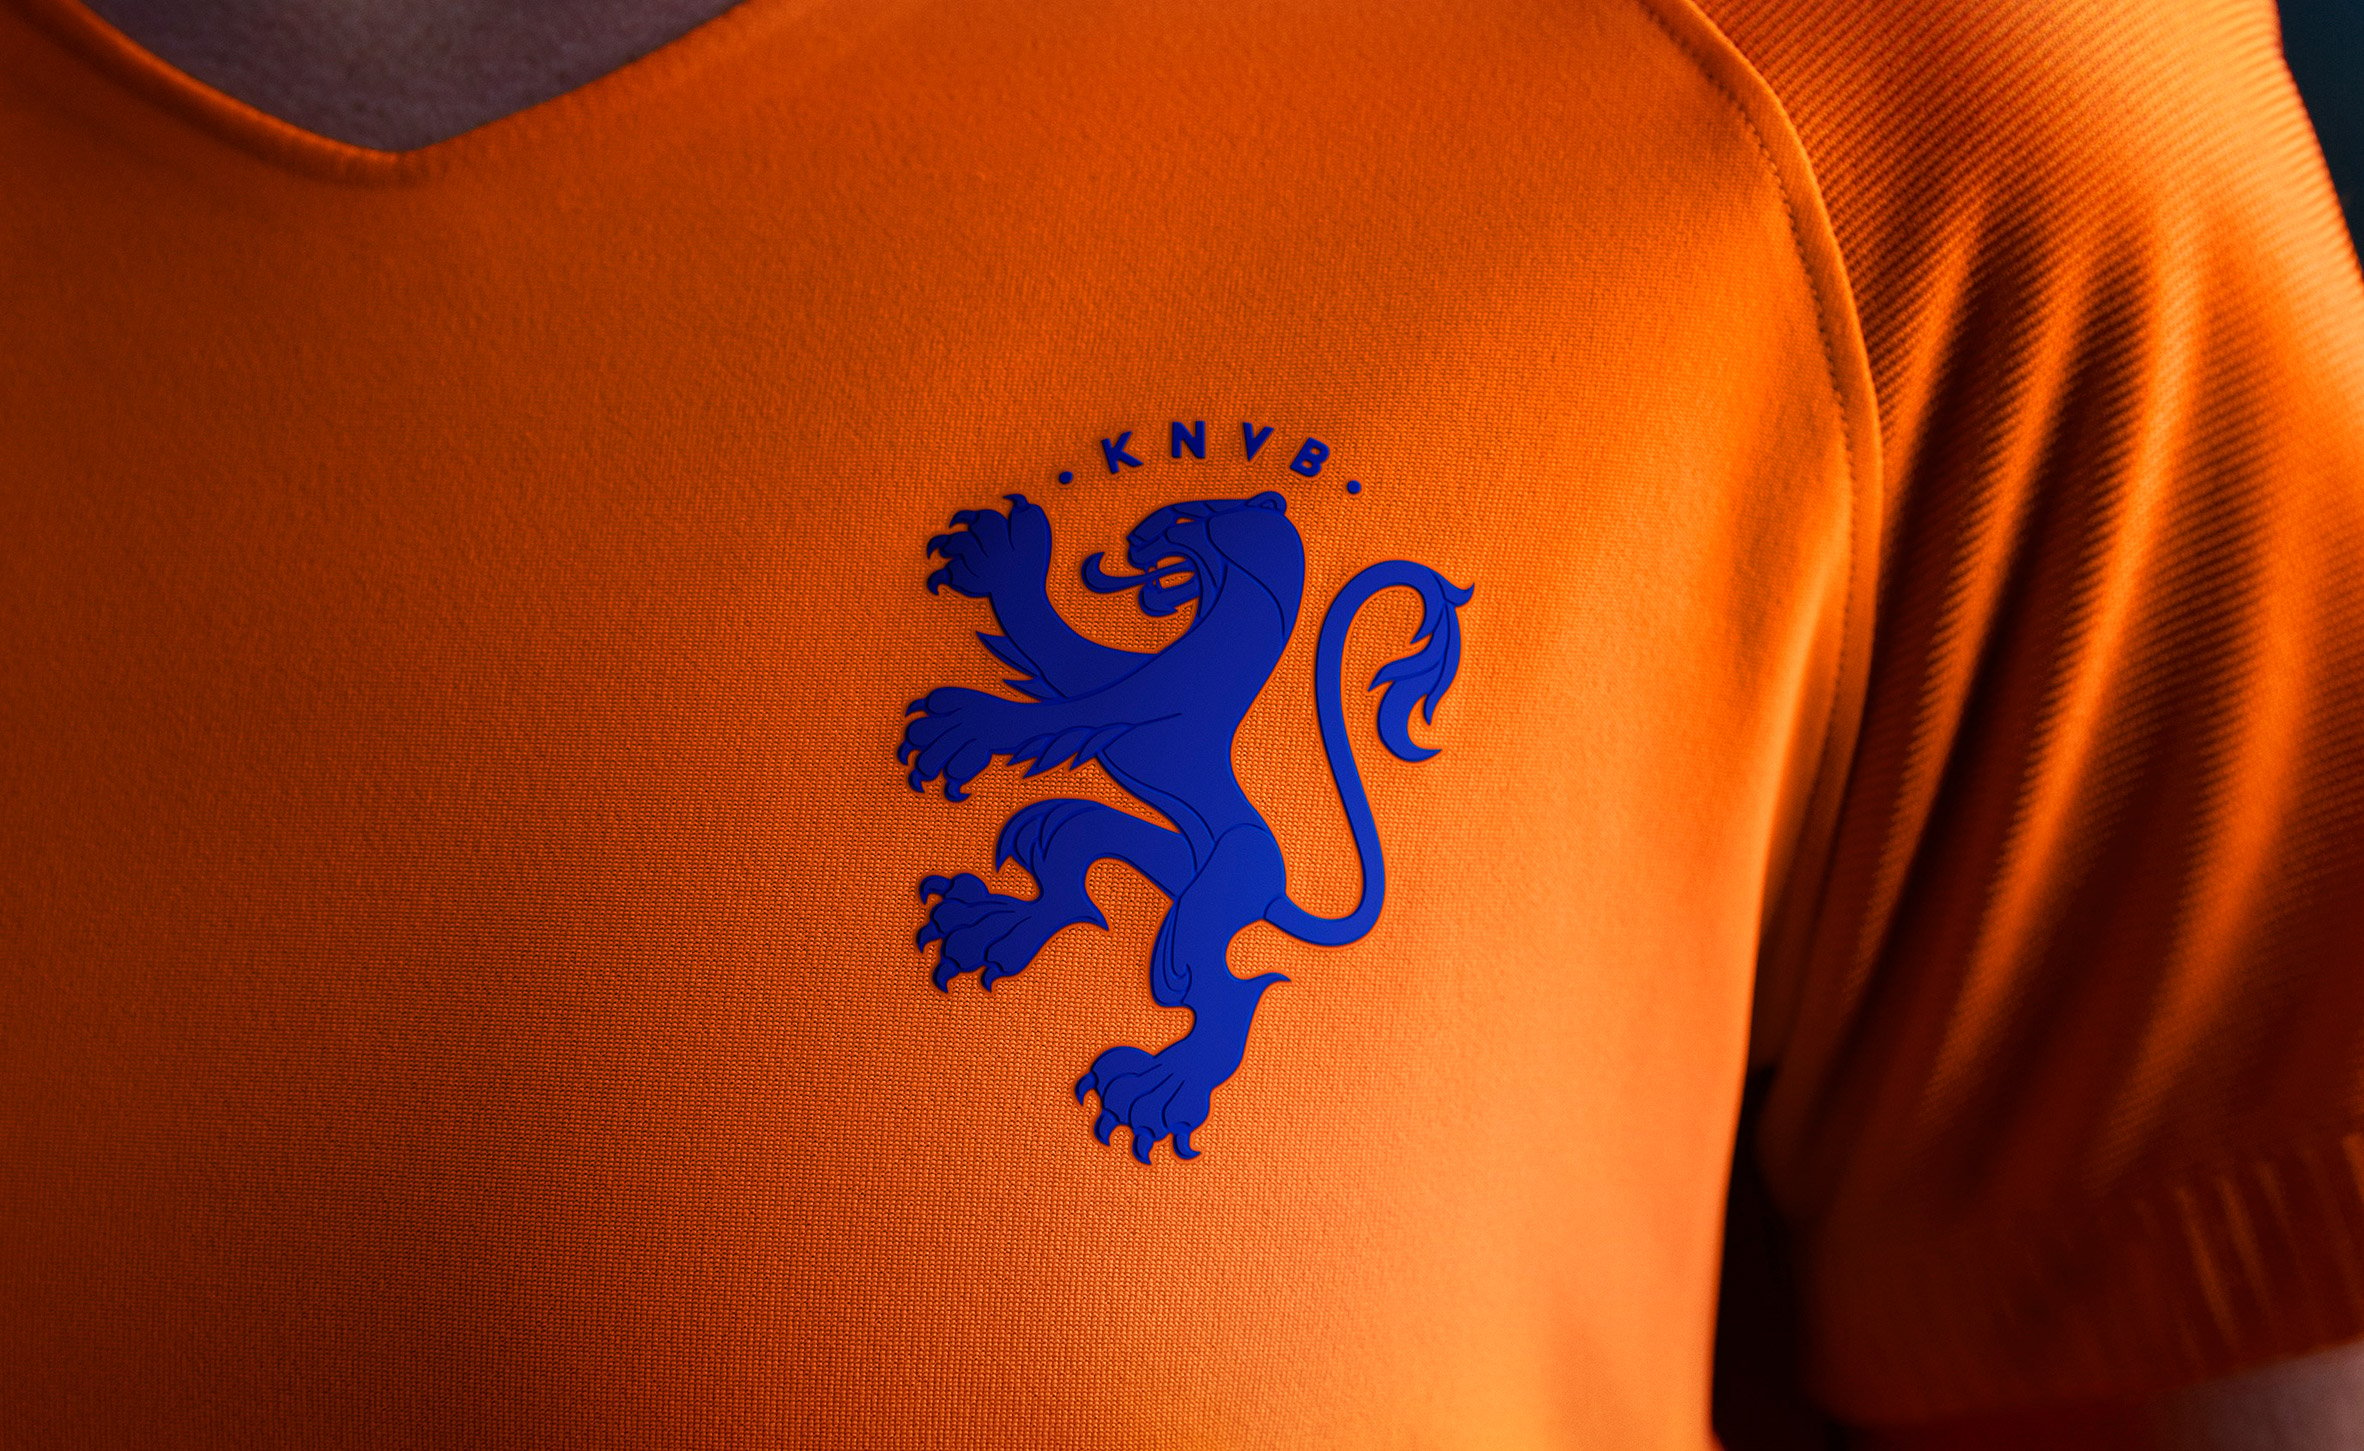 KNVB - crest redesign 1